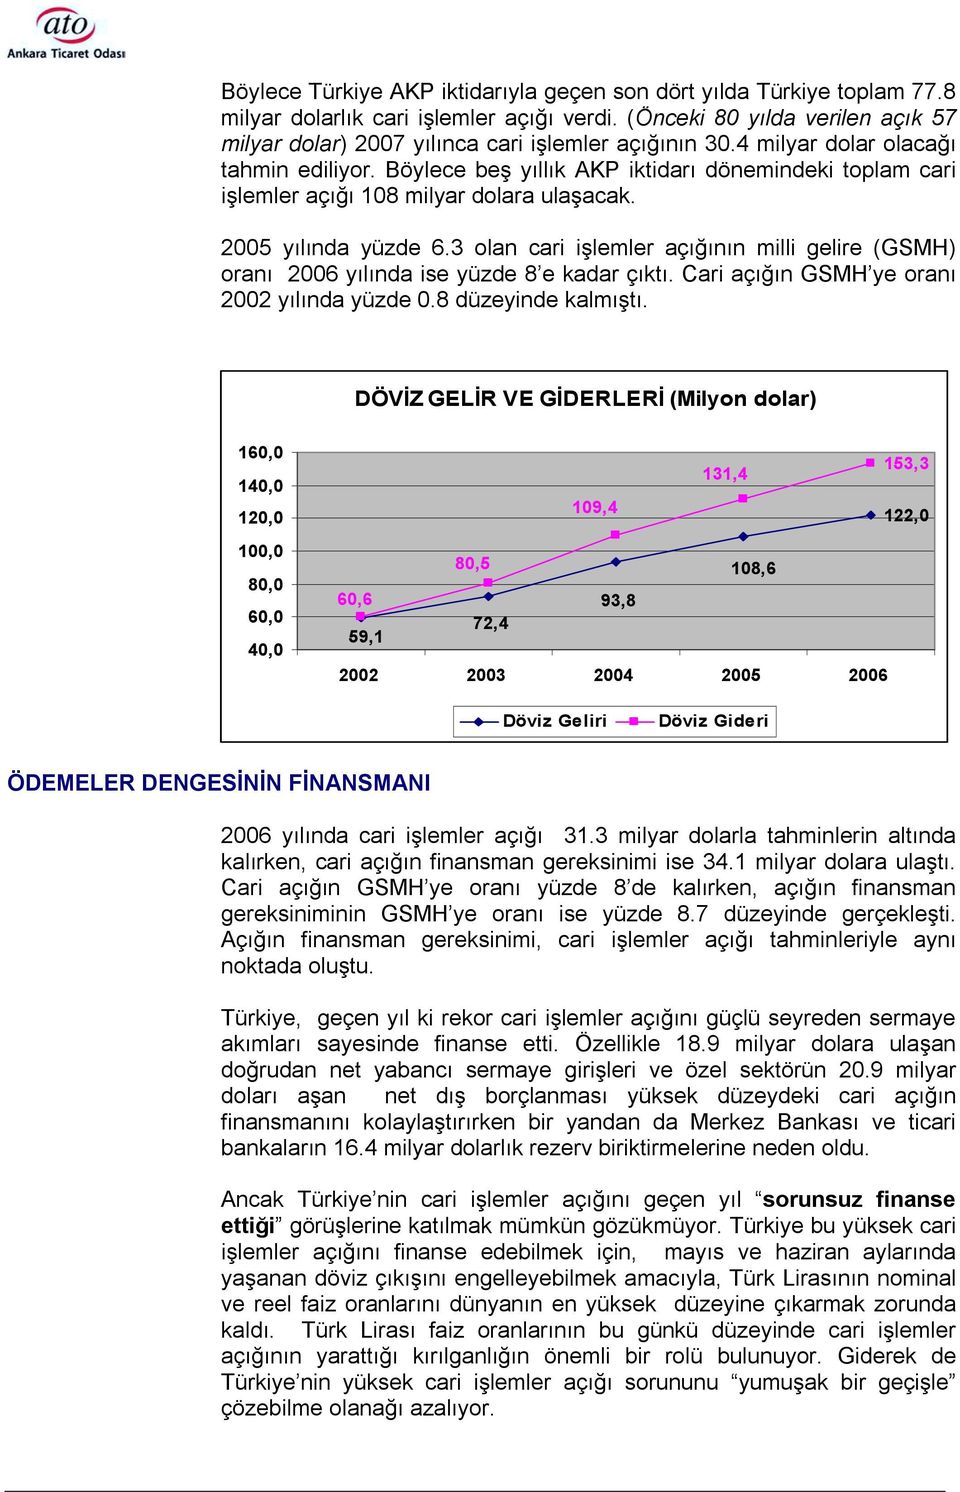 Böylece beş yõllõk AKP iktidarõ dönemindeki toplam cari işlemler açõğõ 108 milyar dolara ulaşacak. 2005 yõlõnda yüzde 6.